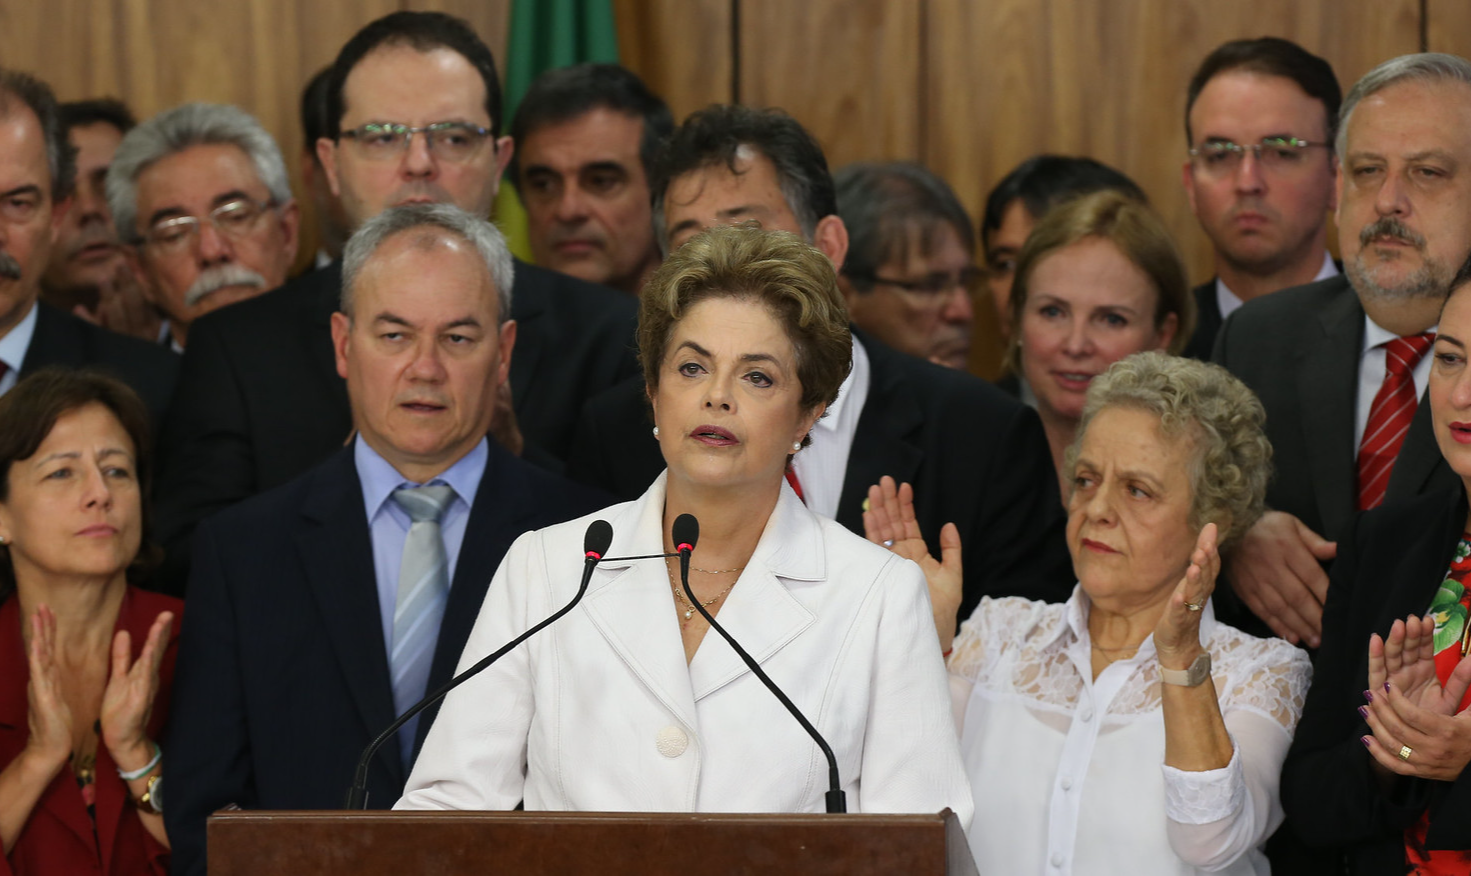 Segundo cientista política Clarisse Gurgel, movimento para derrubar Dilma a partir de 2013 ilustra promoção de revolução colorida por Washington